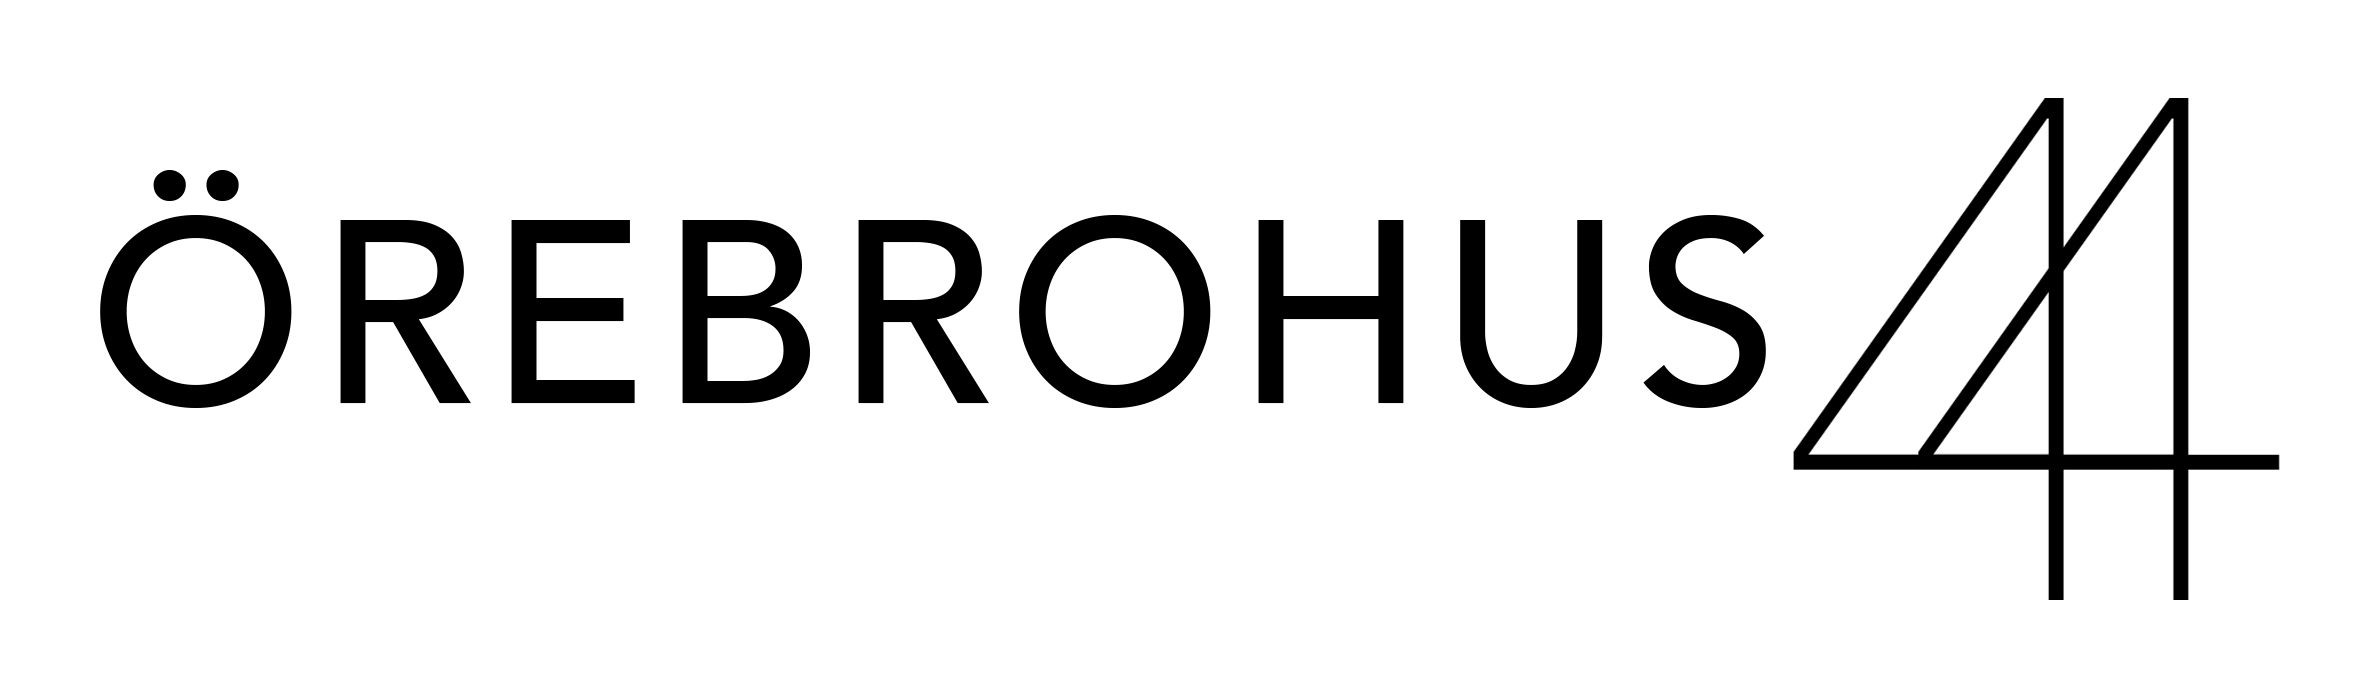 örebrohus 44 logo